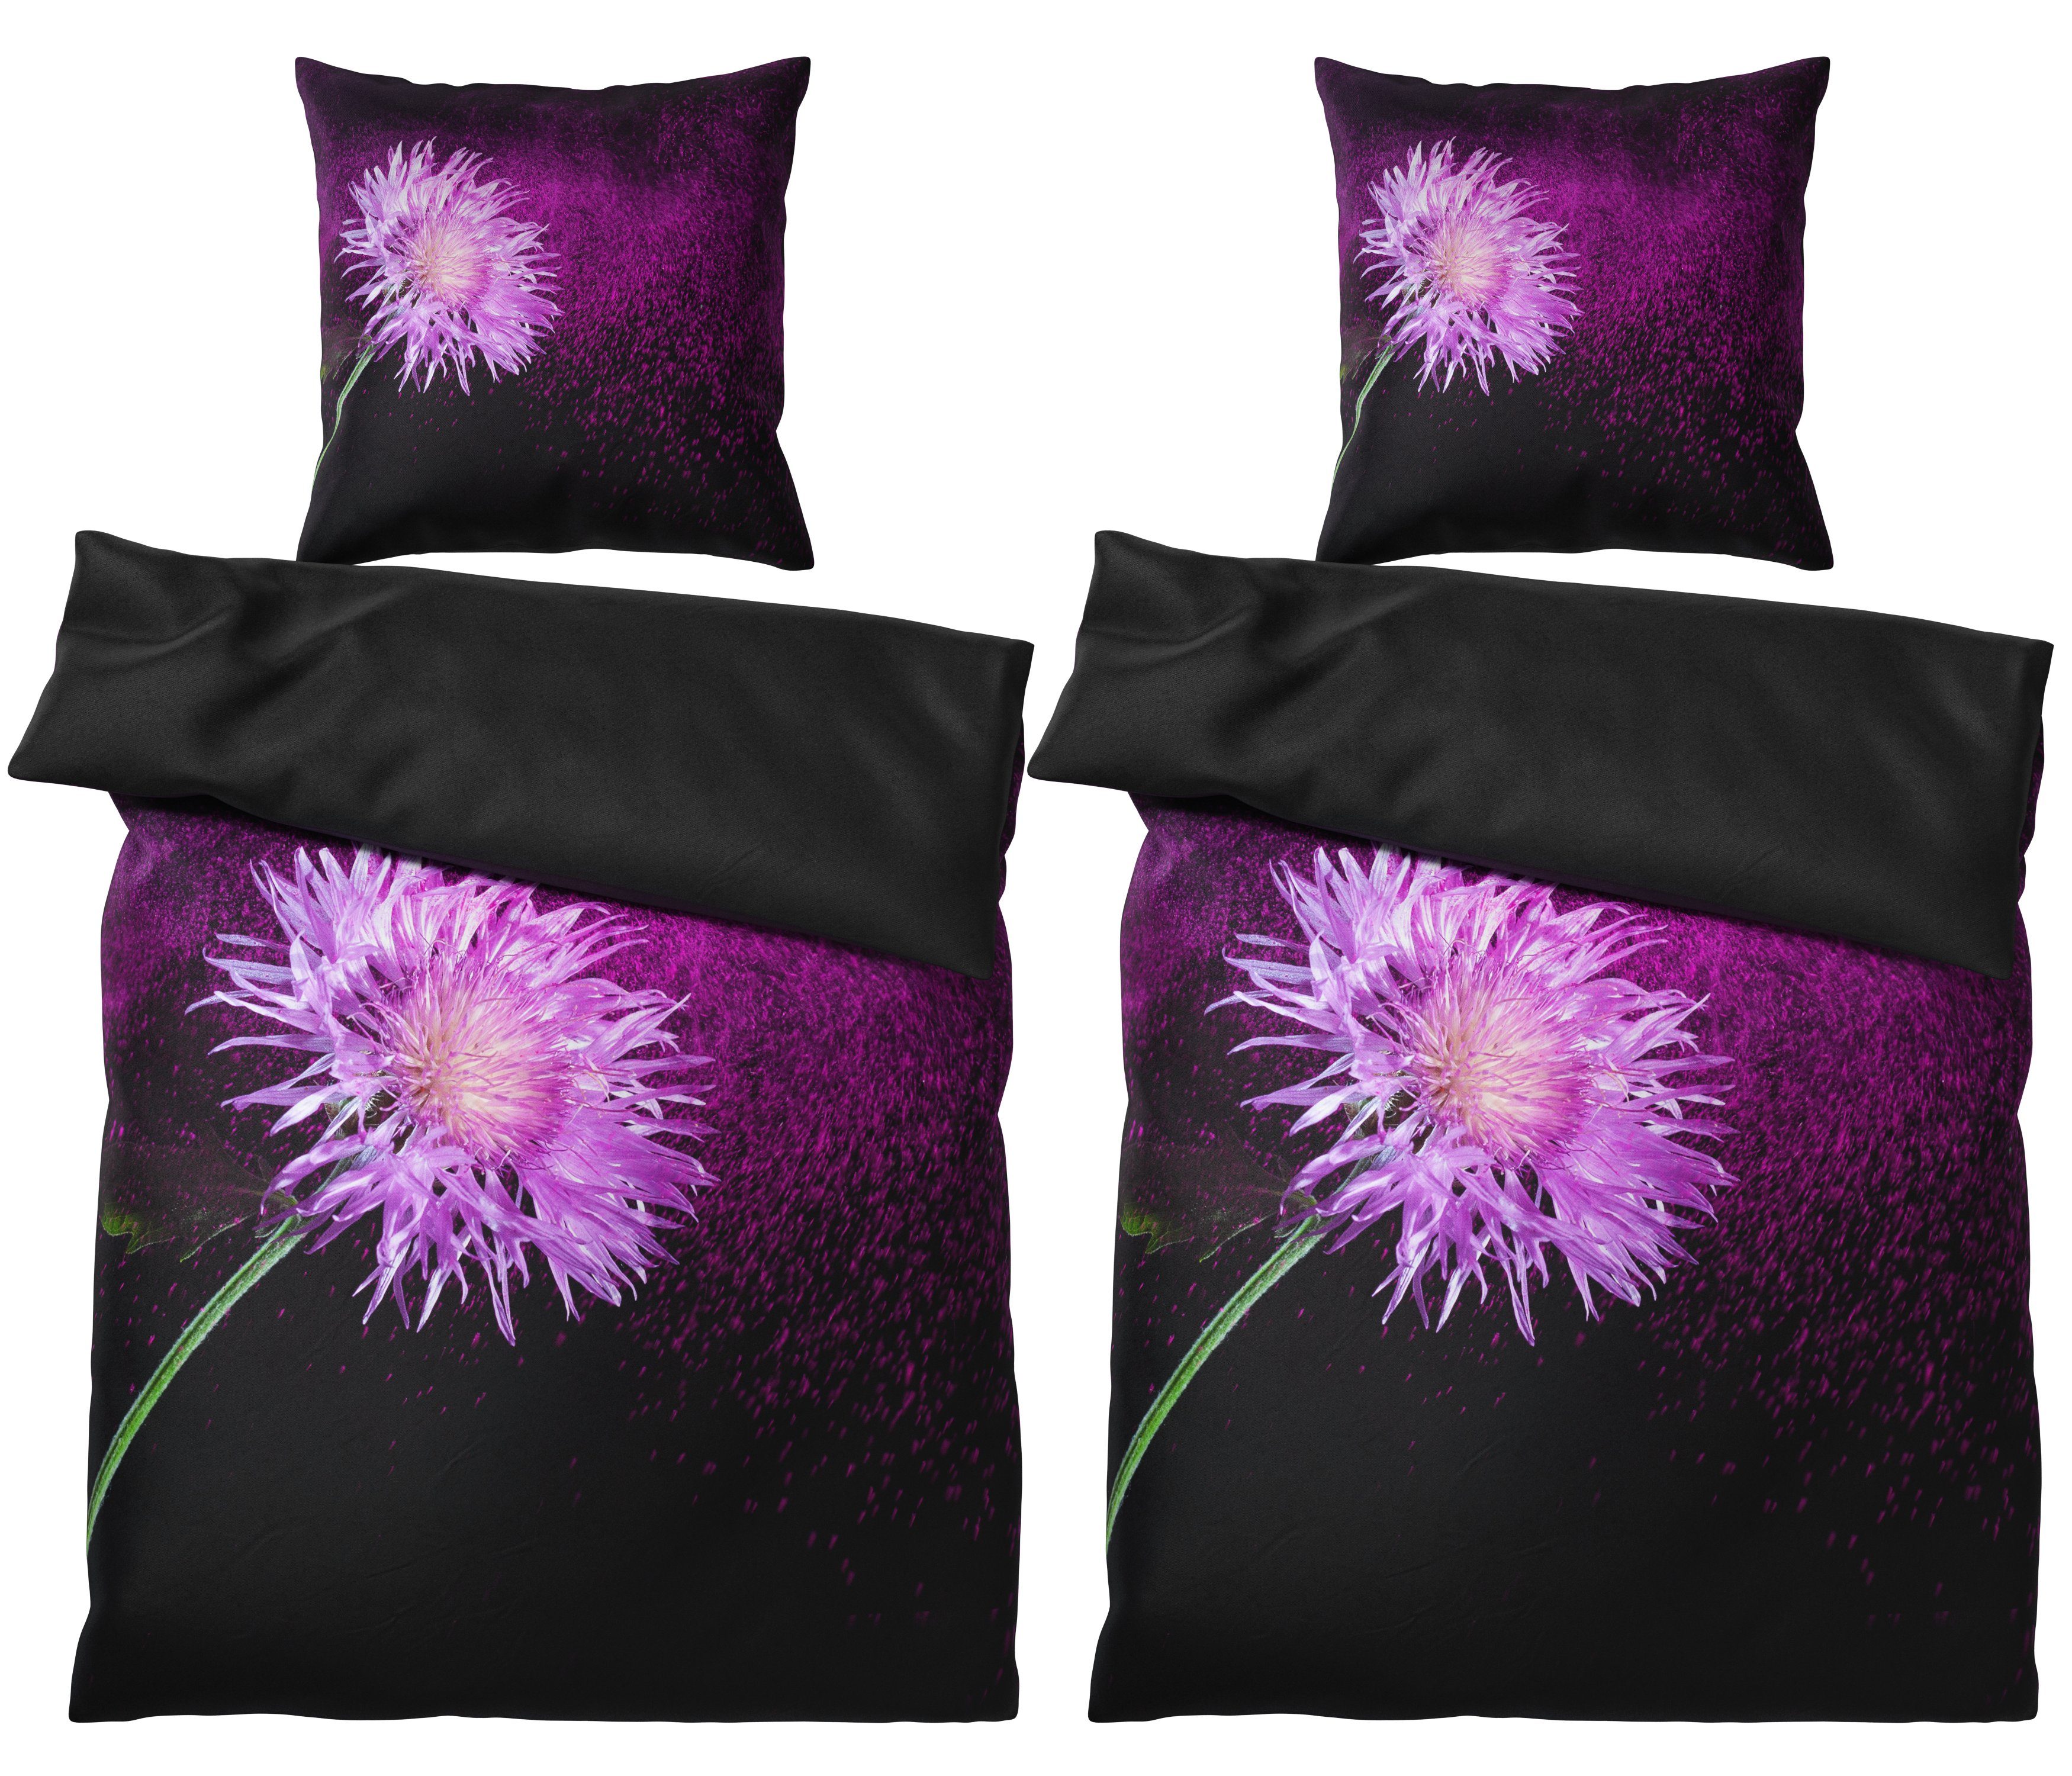 Bettwäsche Purple Dust 135x200 cm, Bettbezug und Kissenbezug, Sanilo, Baumwolle, 4 teilig